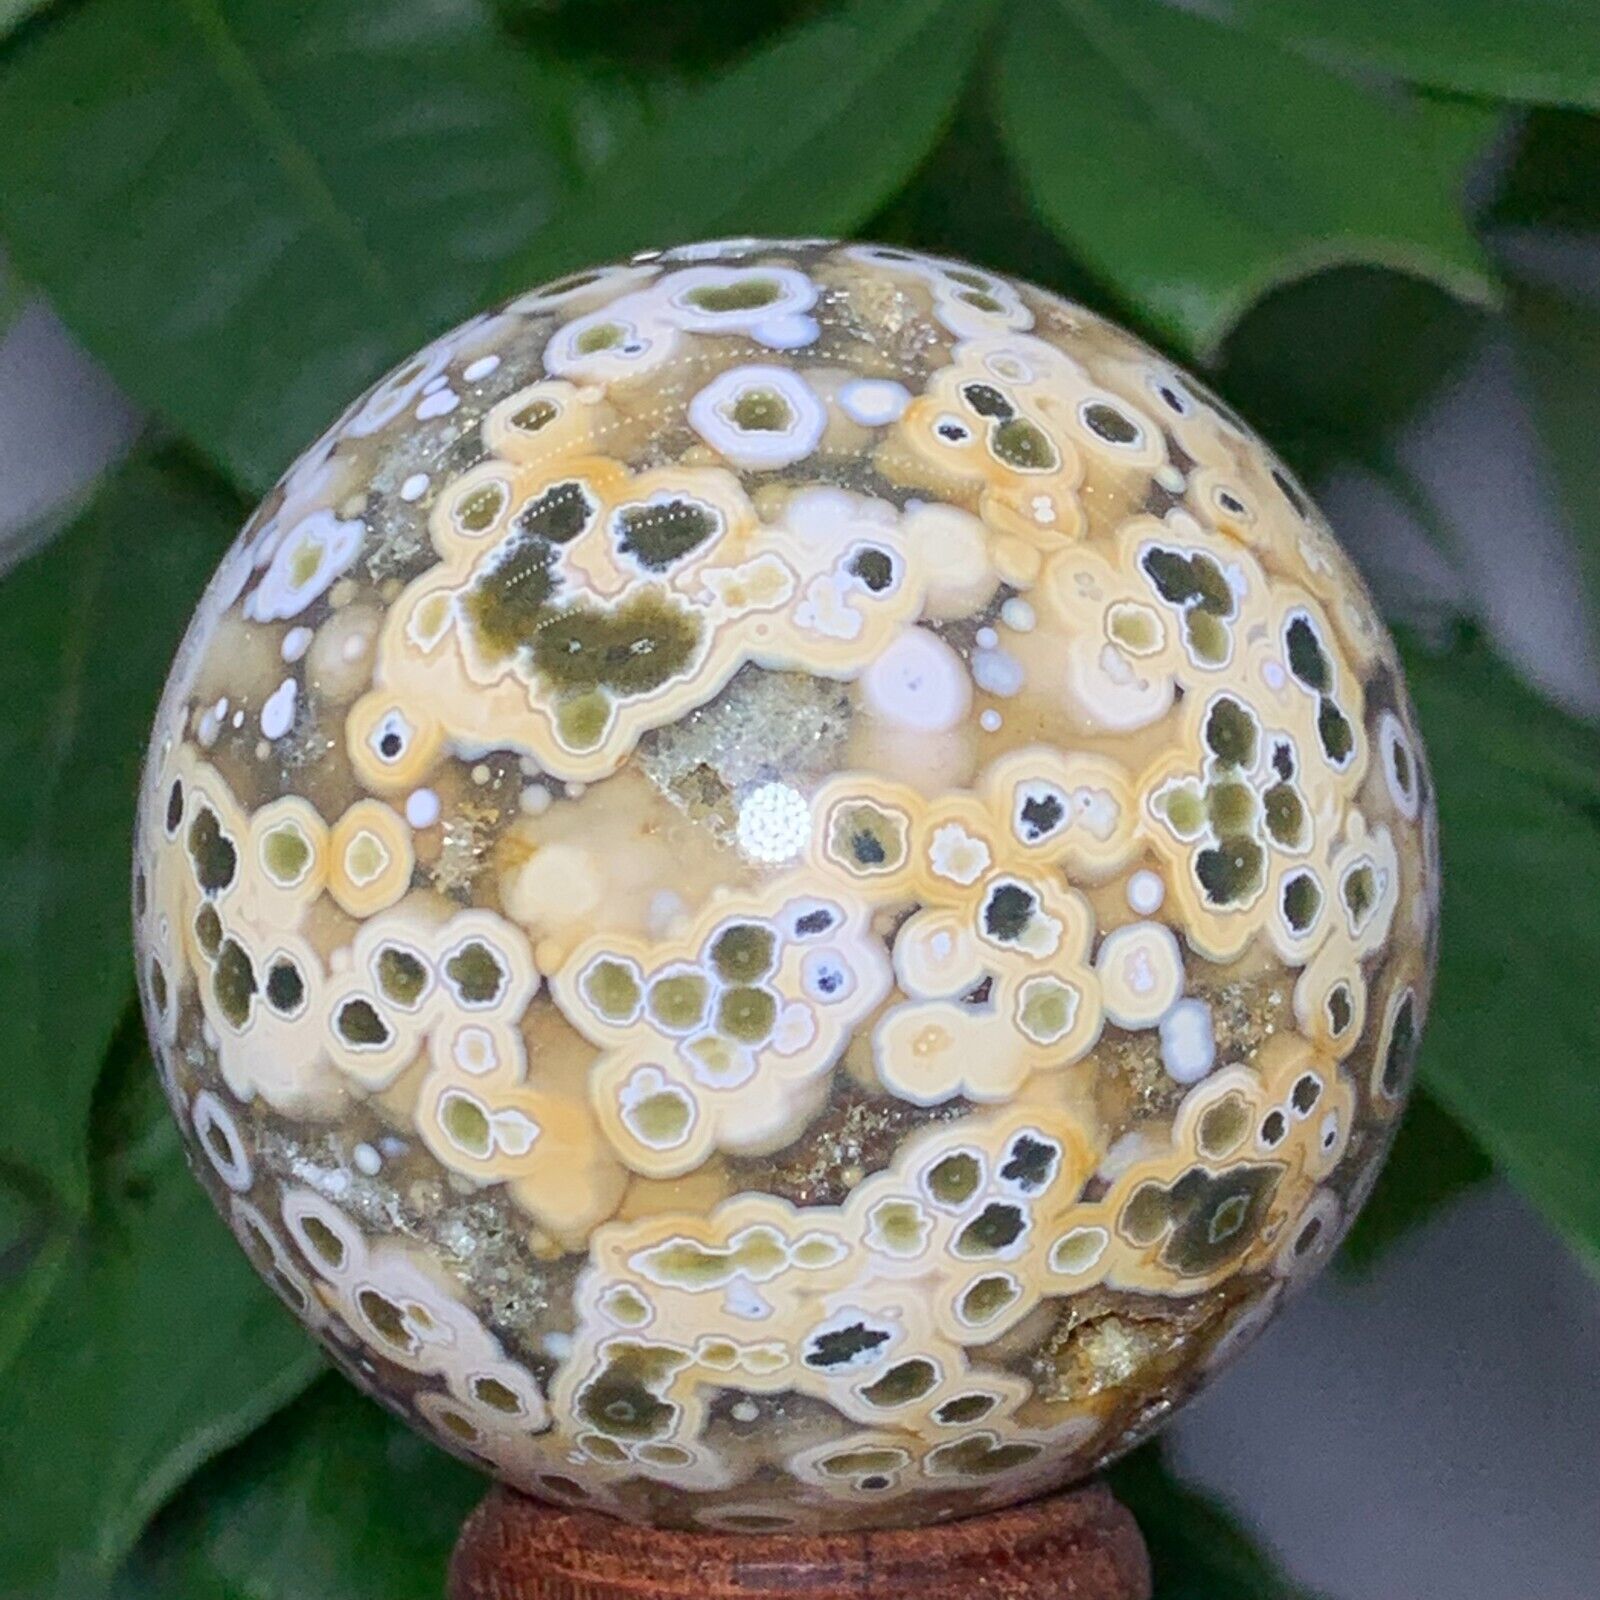 175g Rare Natural Ocean Jasper Sphere Quartz Crystal Ball Reiki Stone